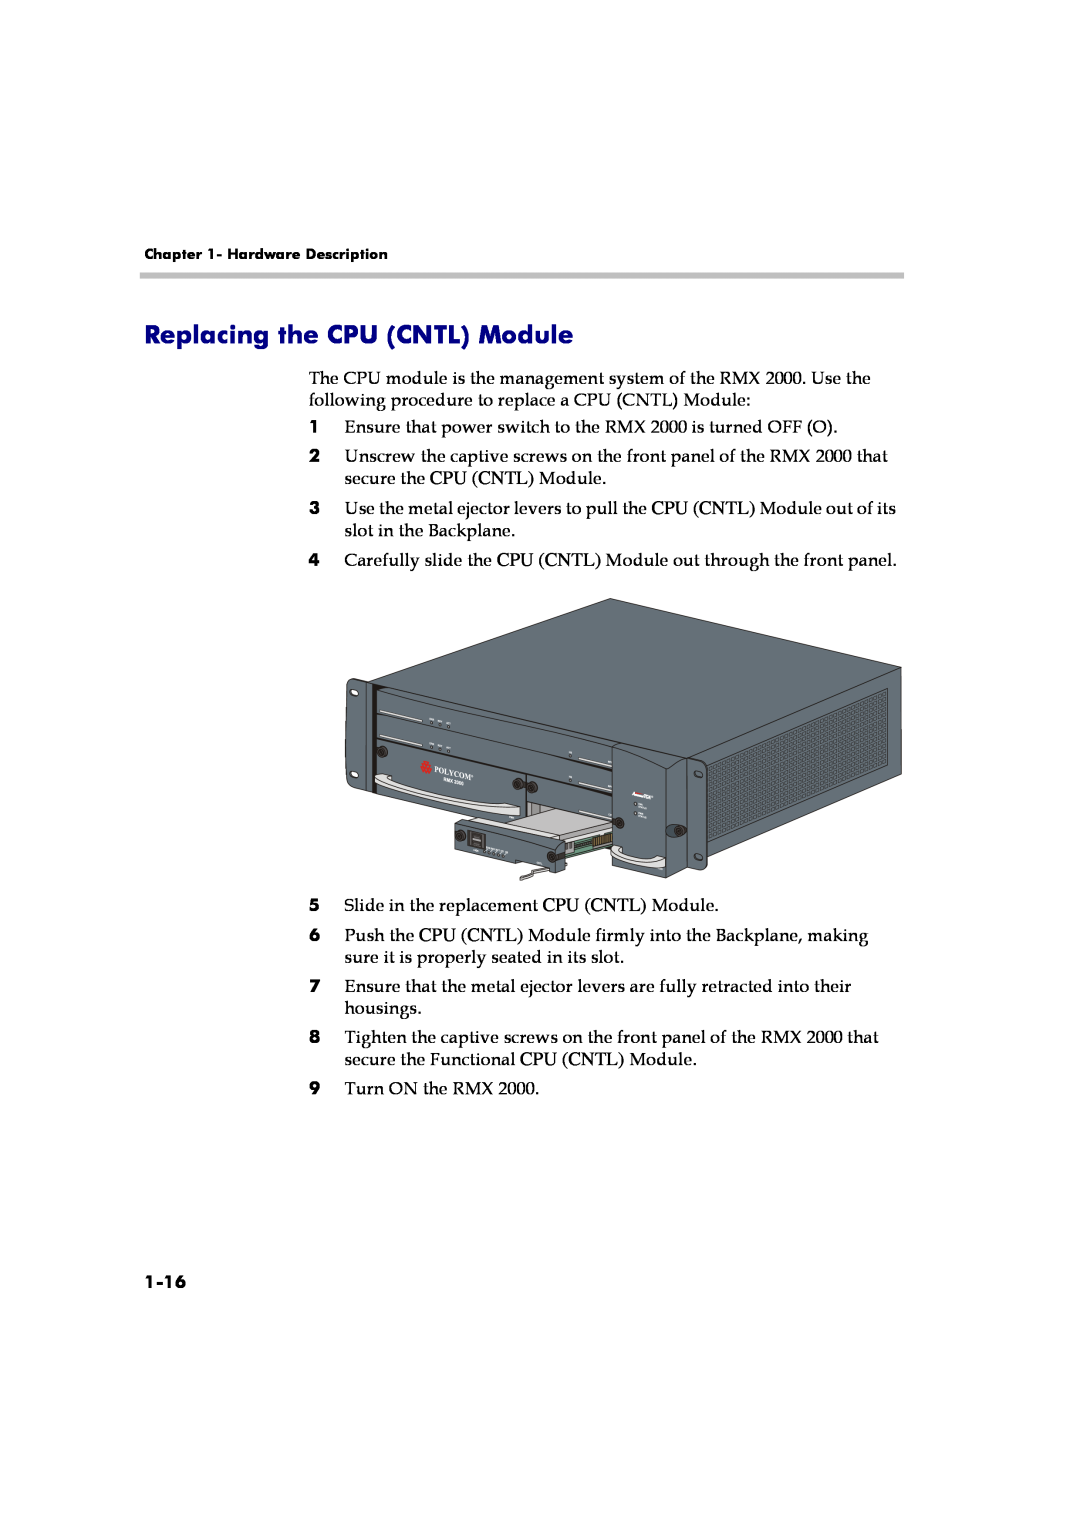 Polycom RMX 2000 manual Replacing the CPU CNTL Module, 1-16 